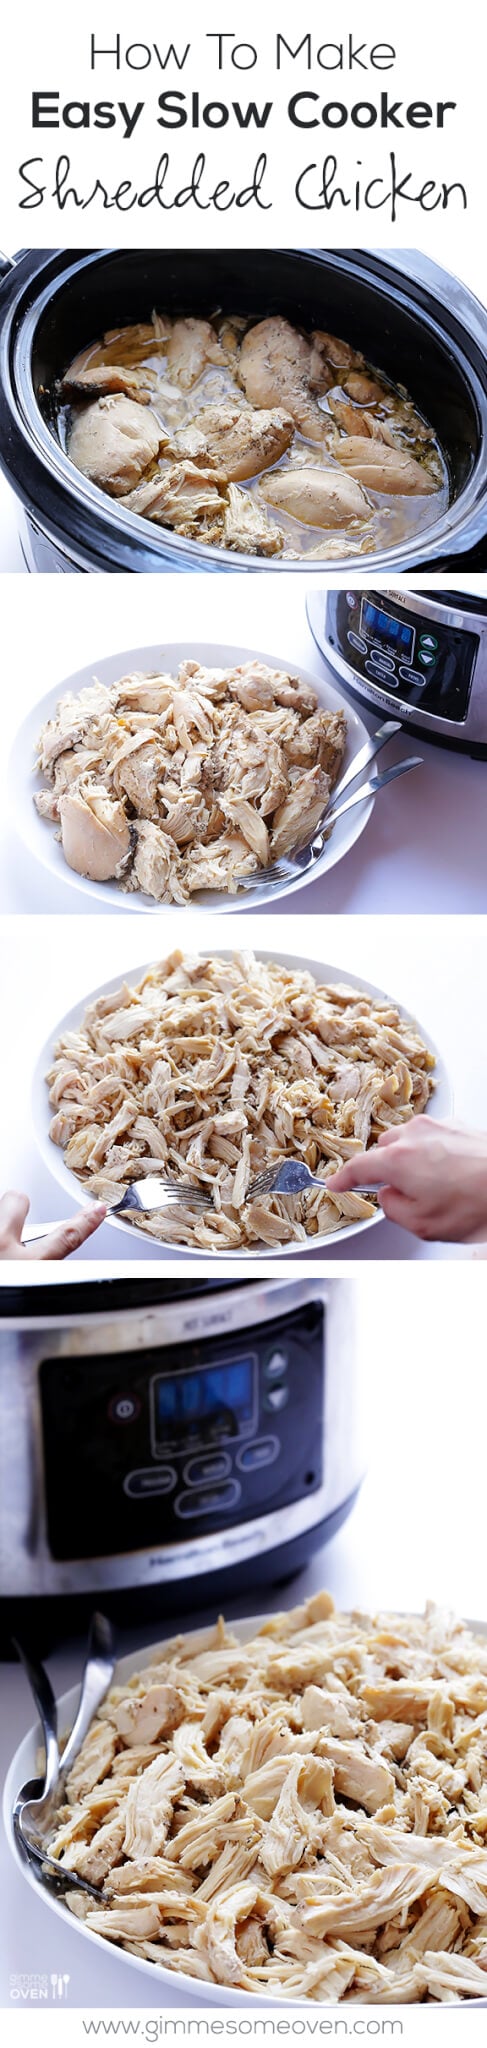 Easy Slow Cooker Shredded Chicken | gimmesomeoven.com